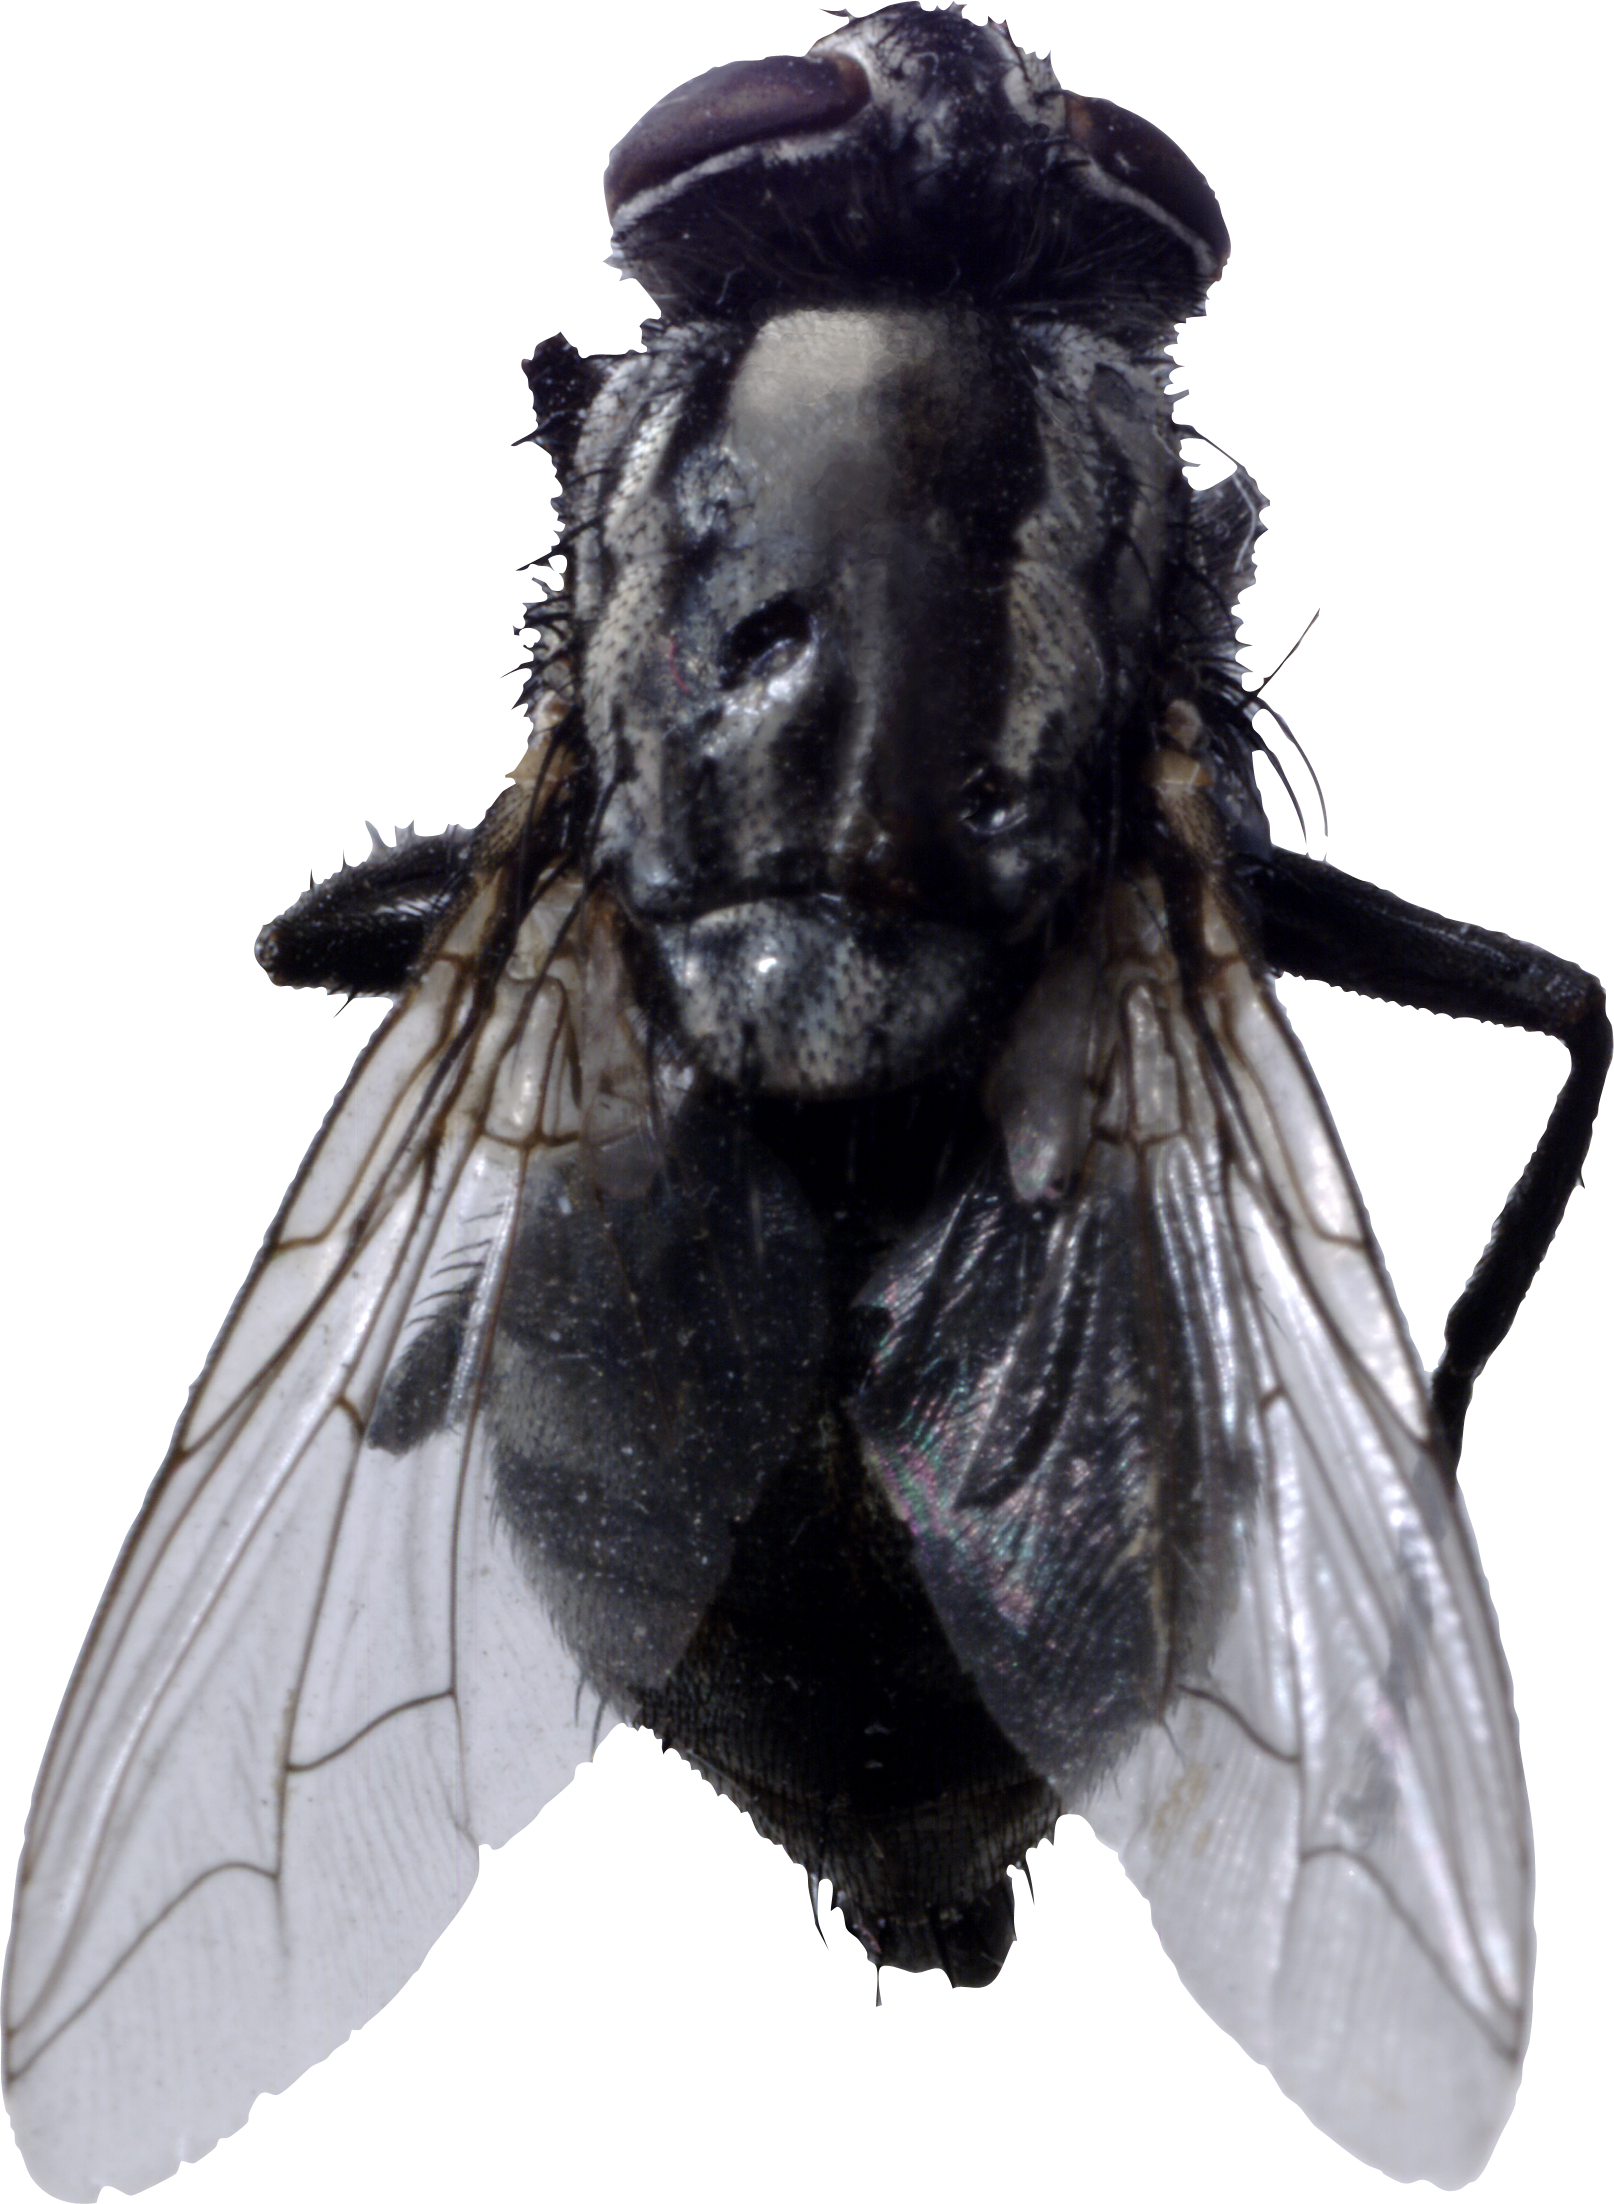 Immagine Trasparente del PNG della mosca del cavallo nero